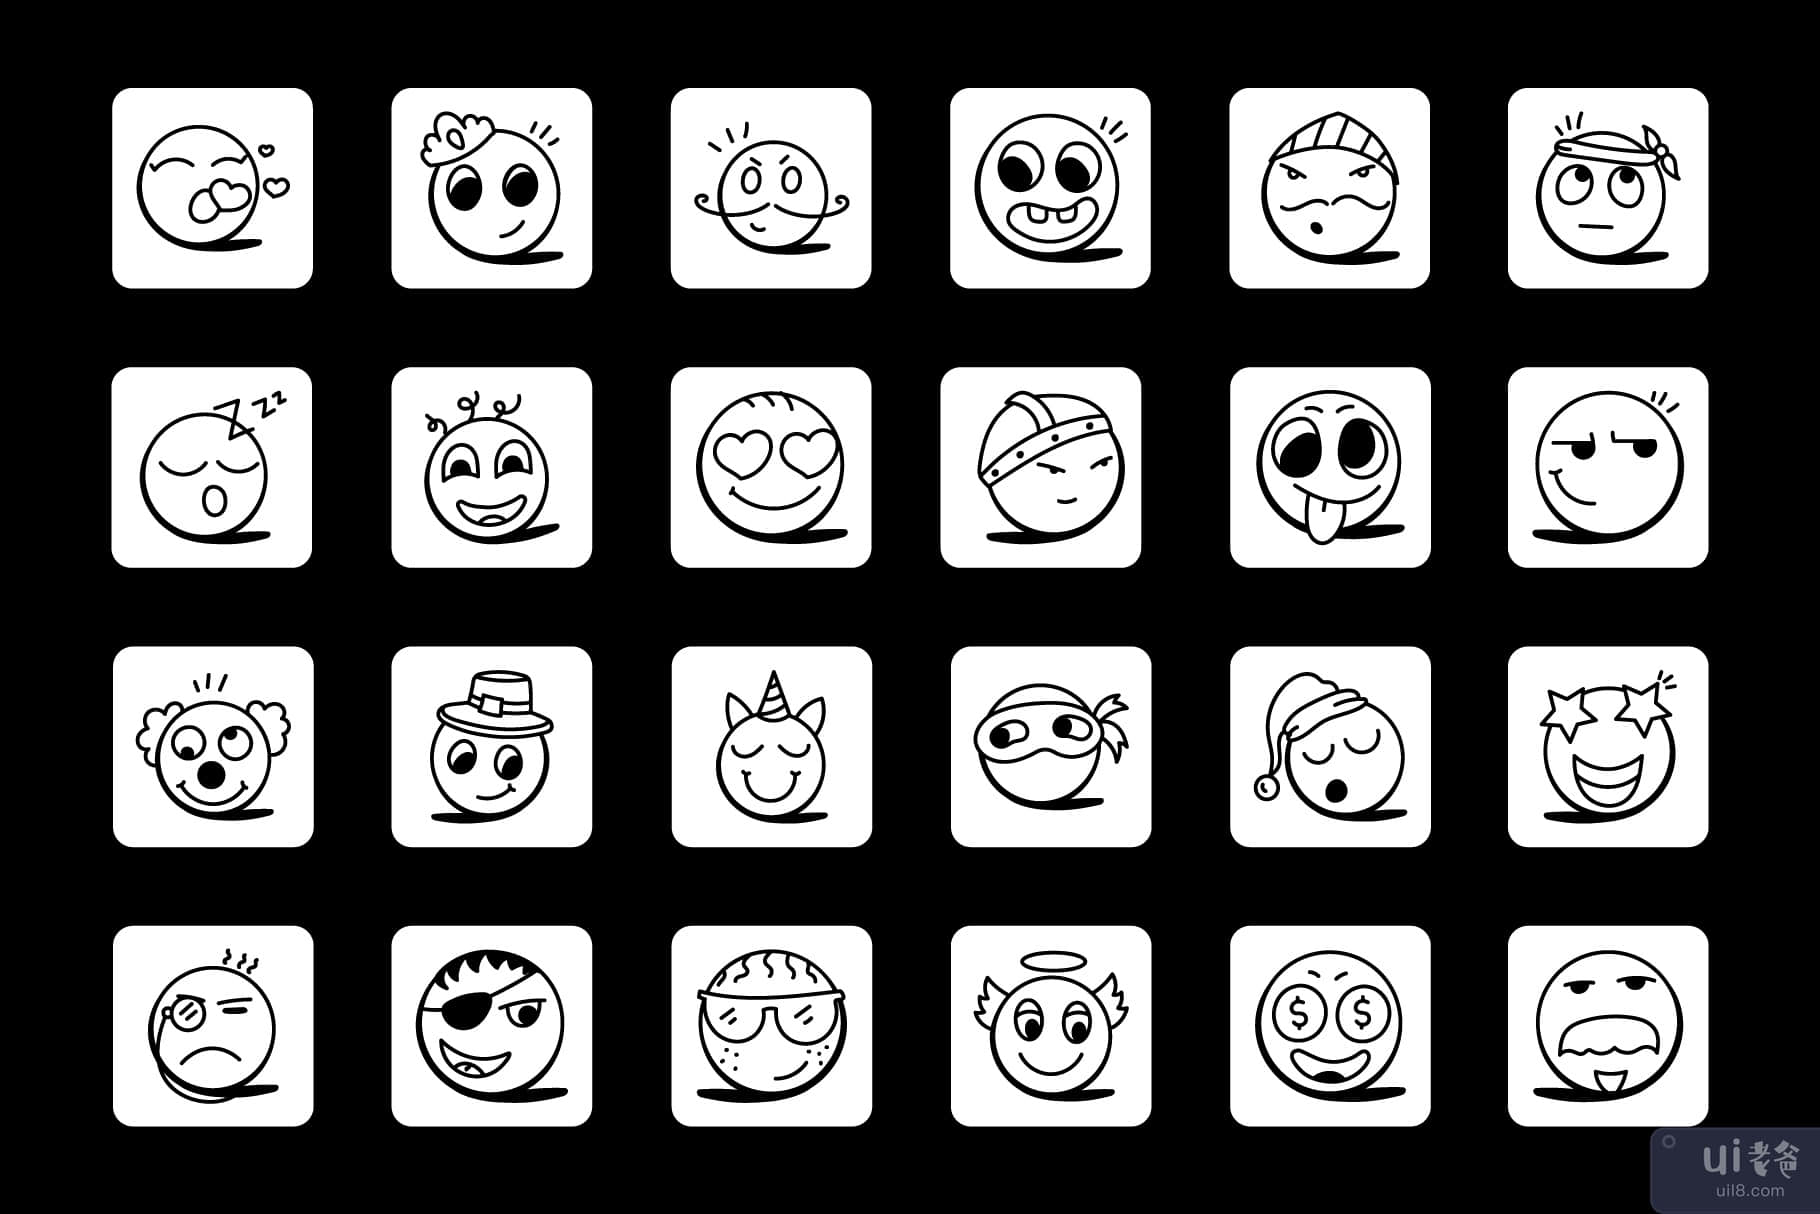 笑脸和表情符号图标的集合(Collection of Smileys and Emoji Icons)插图6